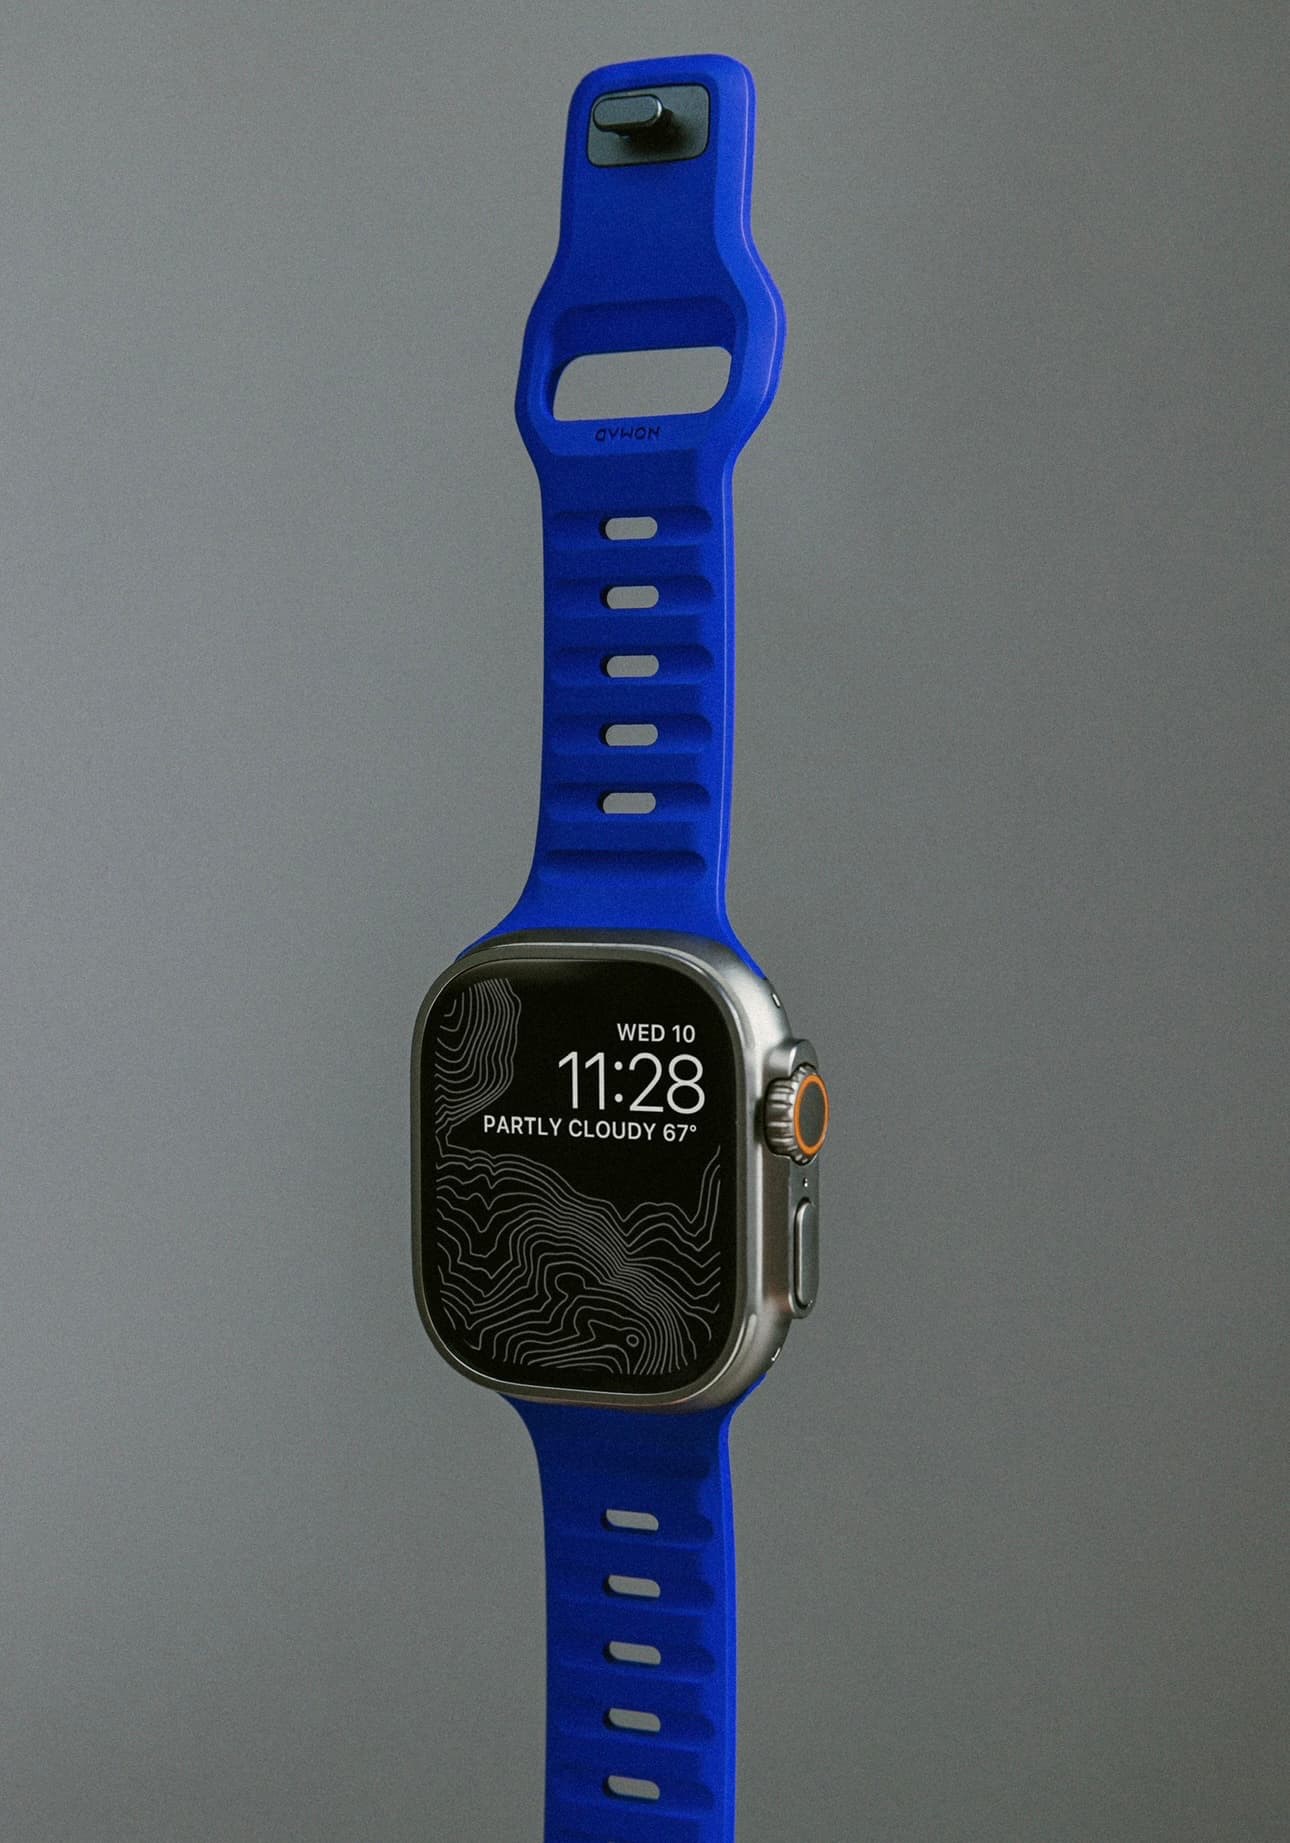 Nomad Blurple Apple Watch Sport Band open.